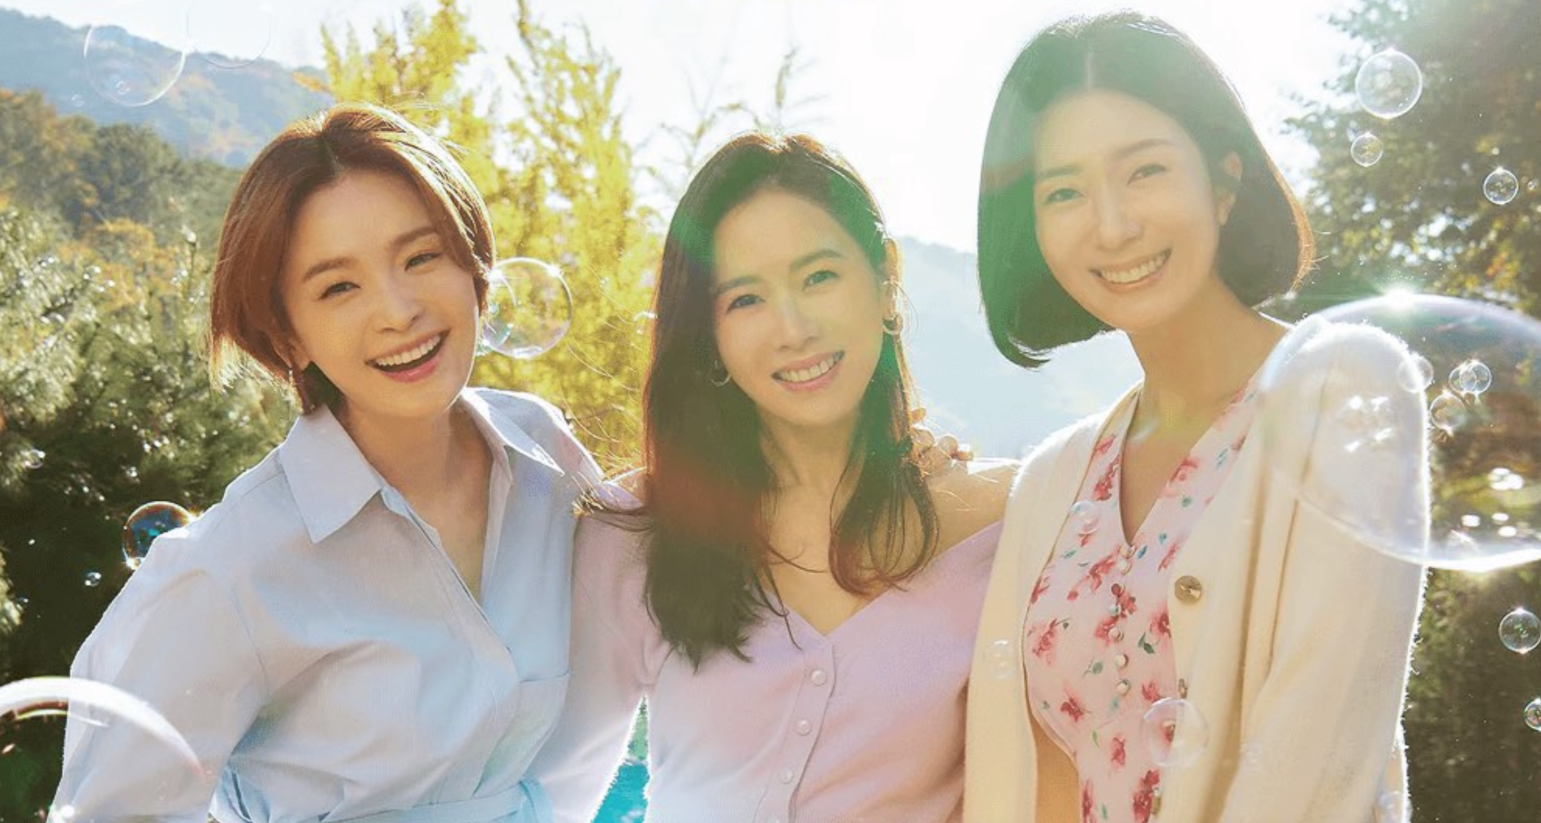 Los personajes que interpretan Son Ye-jin, Jeon Mi-do y Kim Ji-hyun son tres amigas incondicionales en "Treinta y nueve". (Netflix)